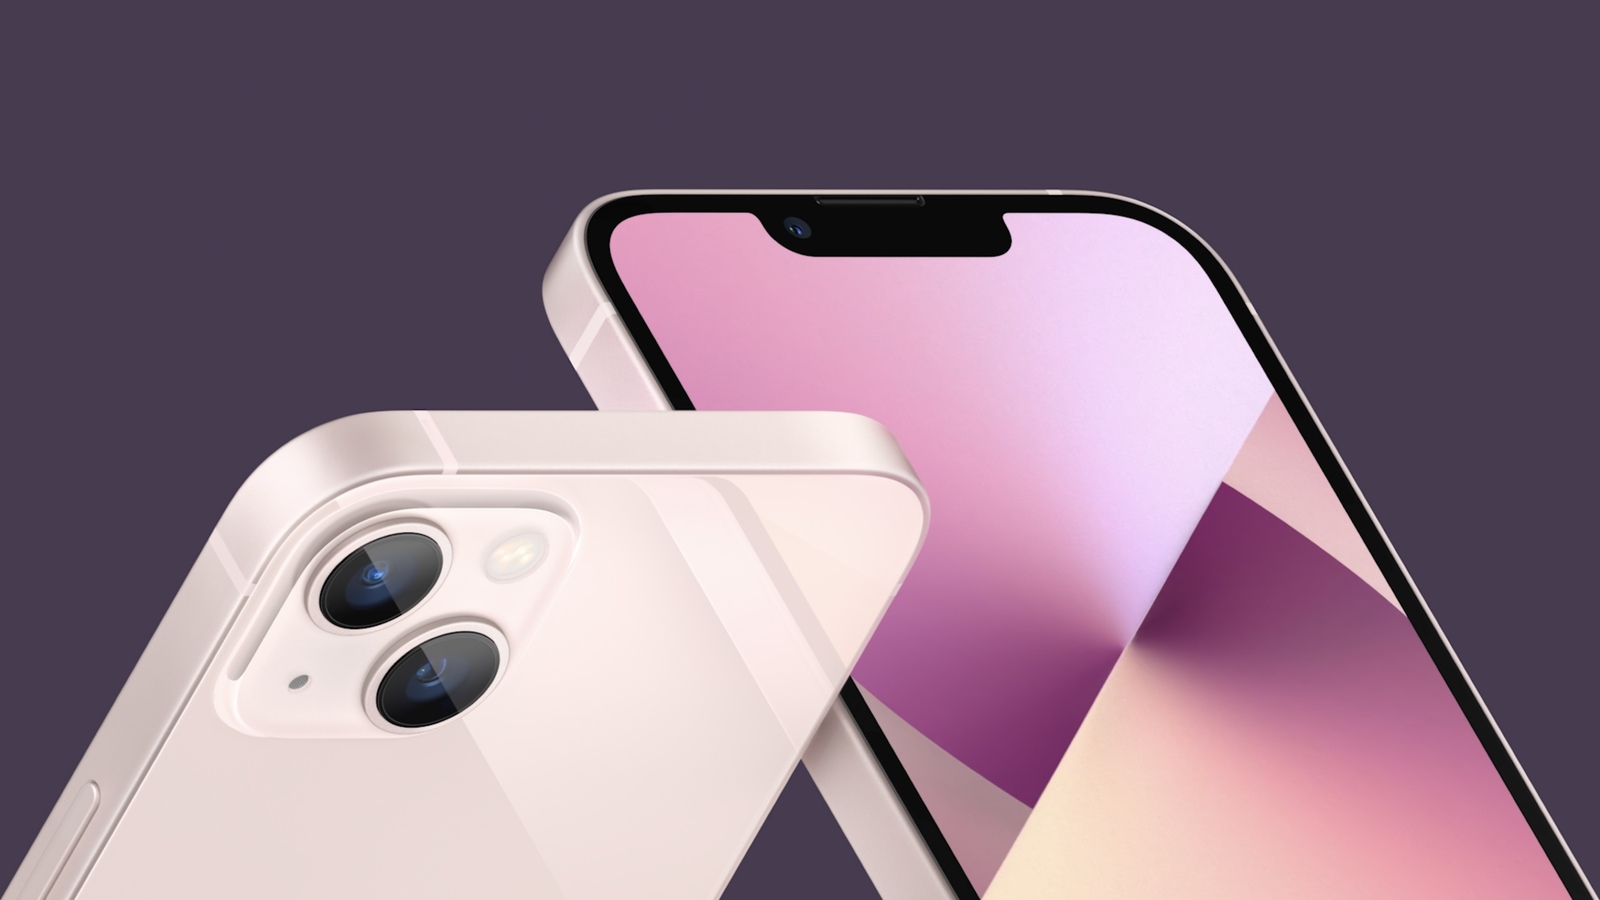 Trọn bộ combo màu sắc của iPhone 13: Lạ lẫm với 2 màu mới siêu bánh bèo - Hình 4